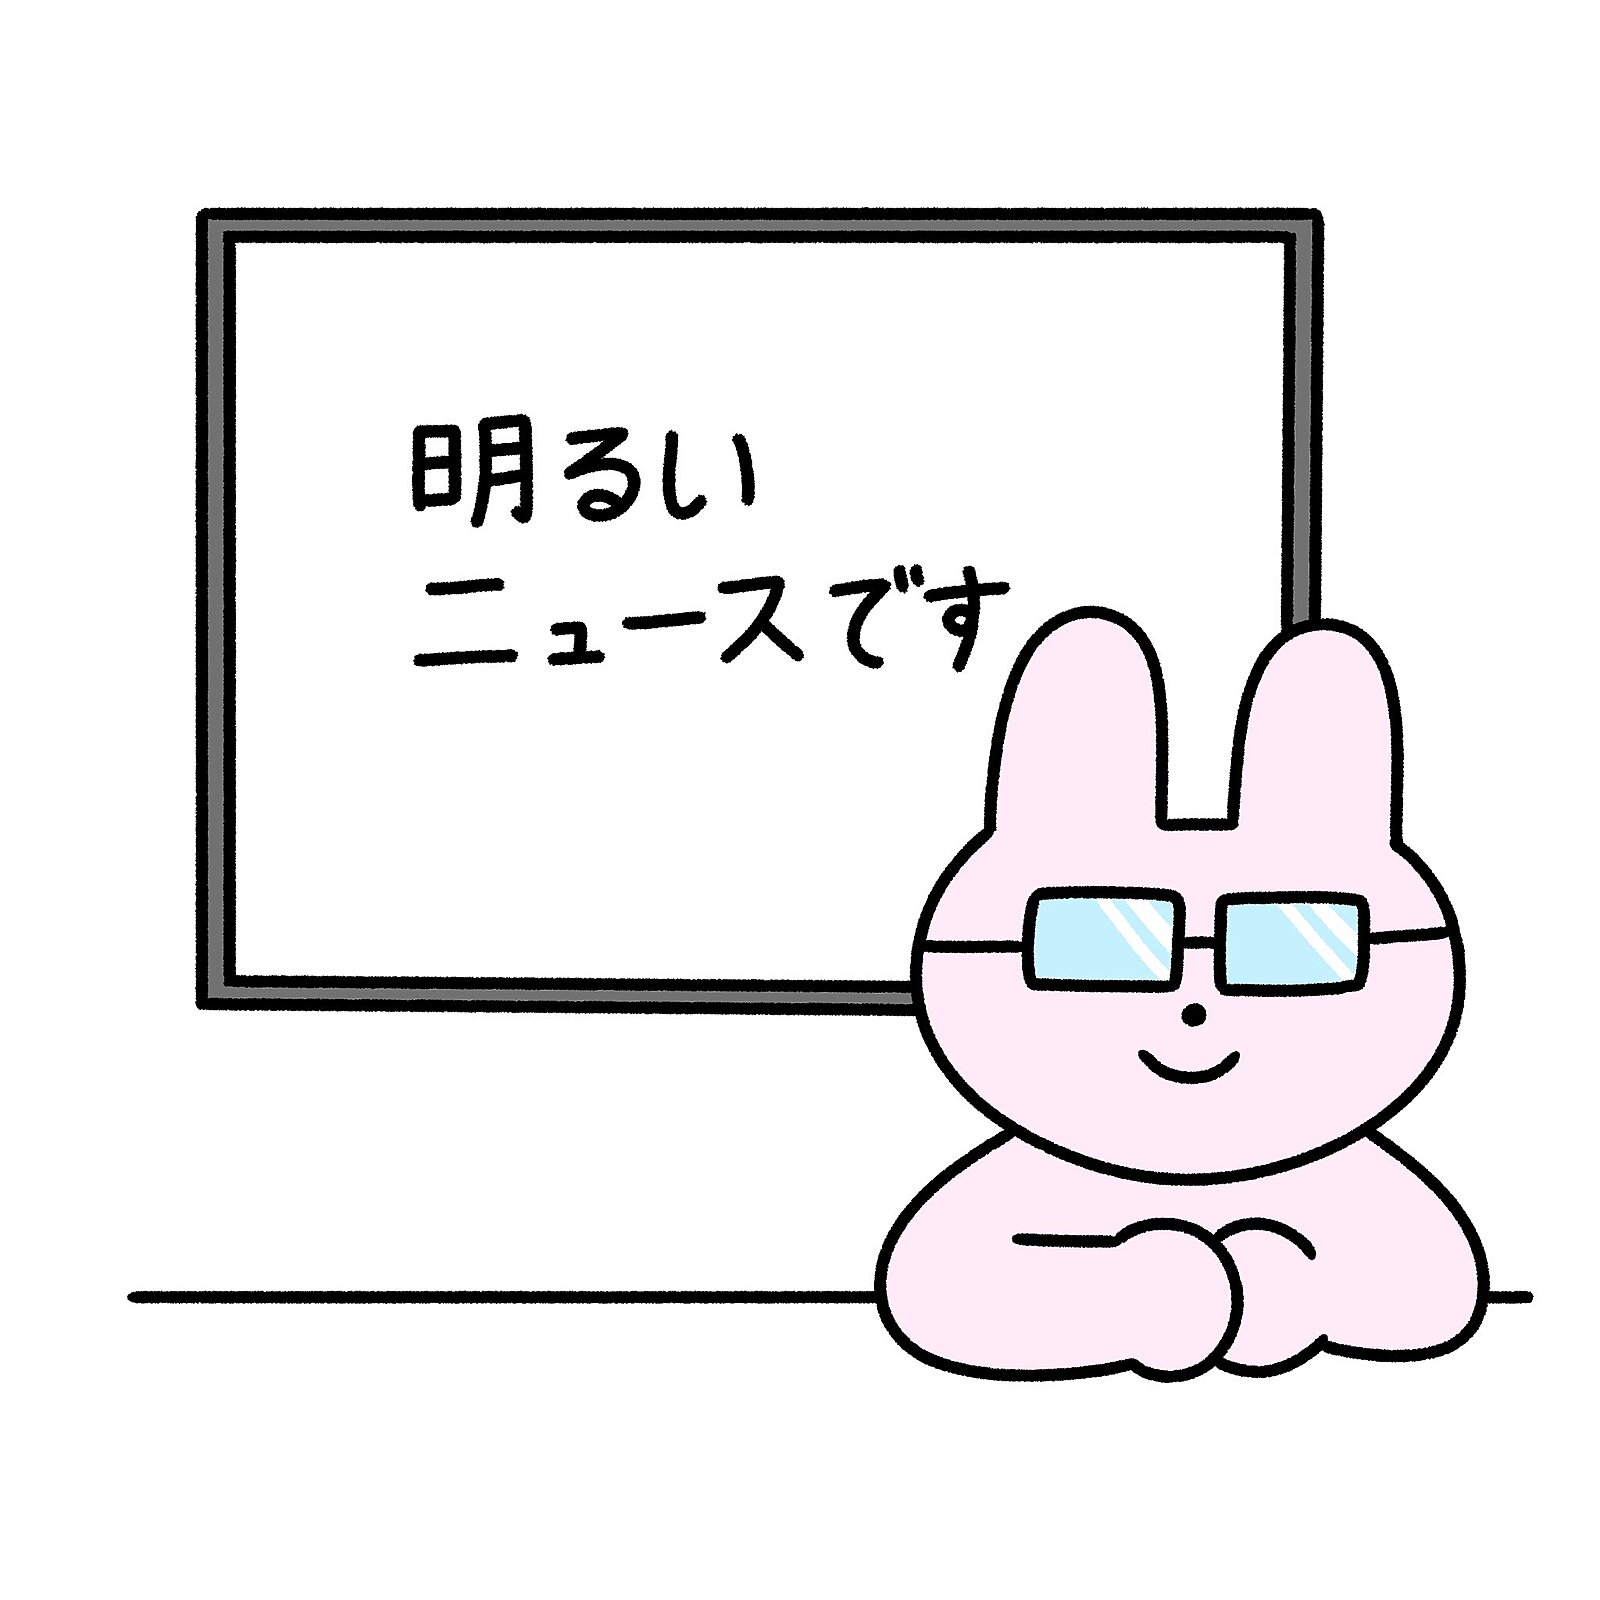 【ガチ朝活】1/19(金)7時博多 ポジティブニュースを語ろう会